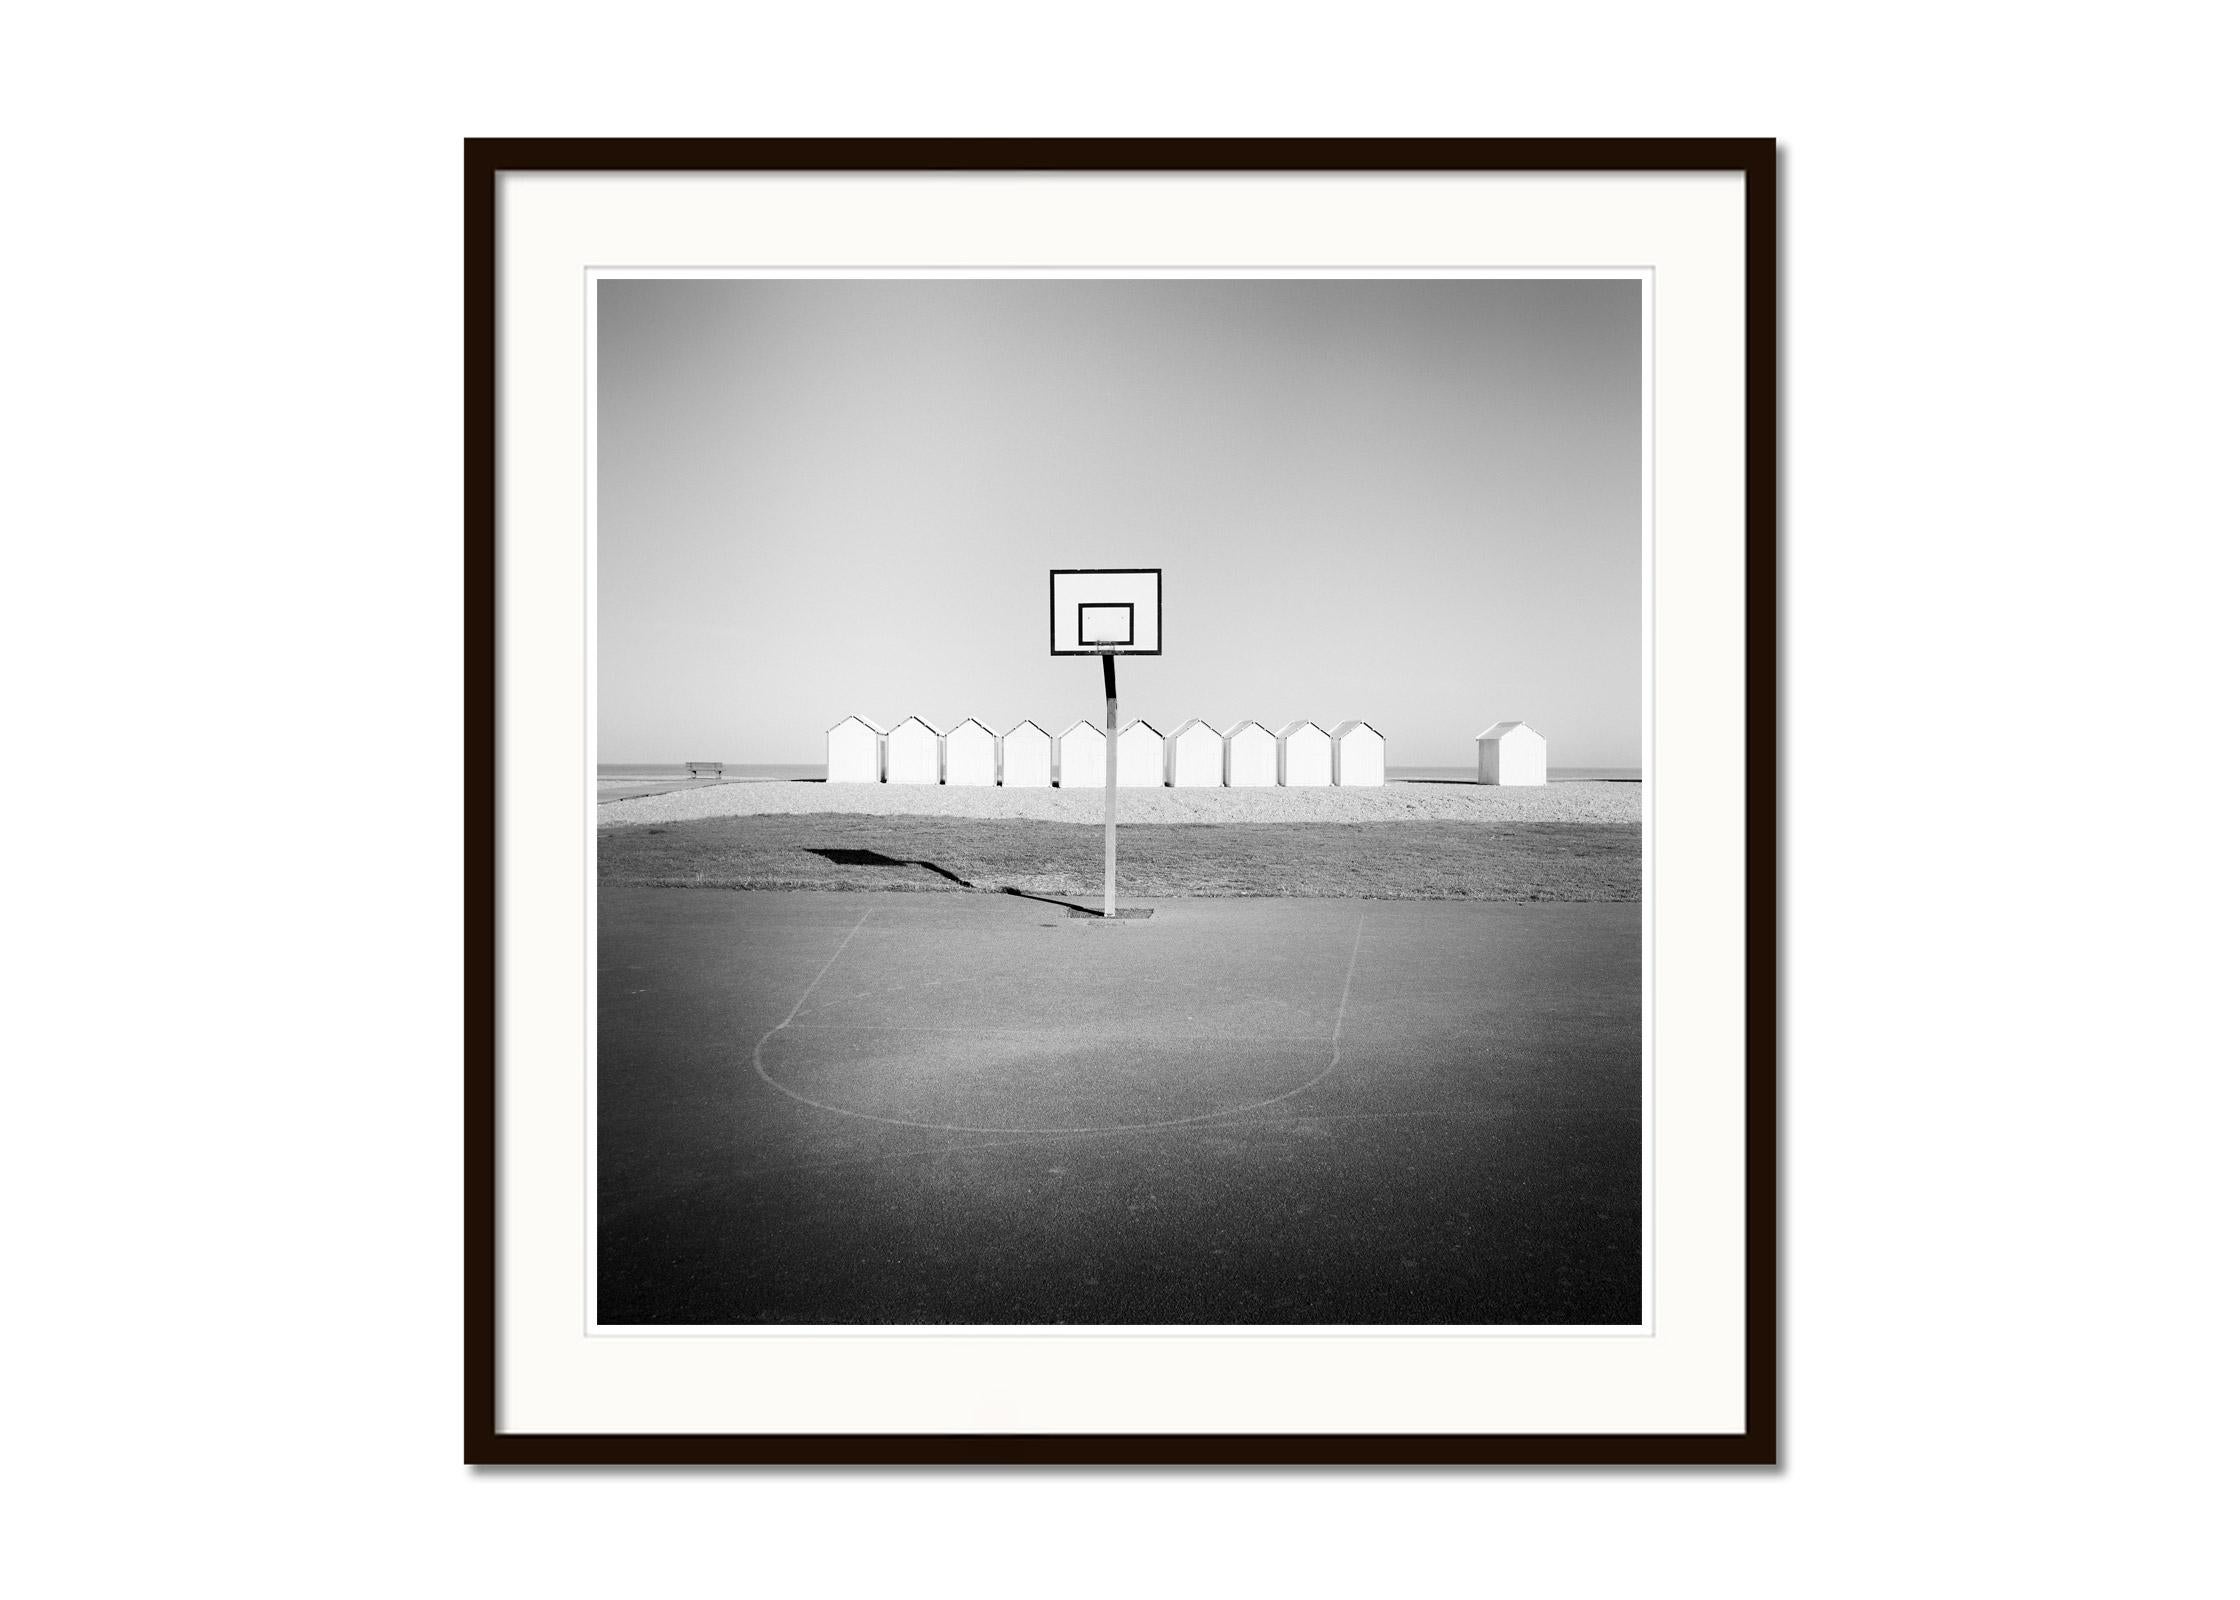 Playground, huttes de plage, basket-ball, France, photographies de paysages en noir et blanc - Gris Landscape Photograph par Gerald Berghammer